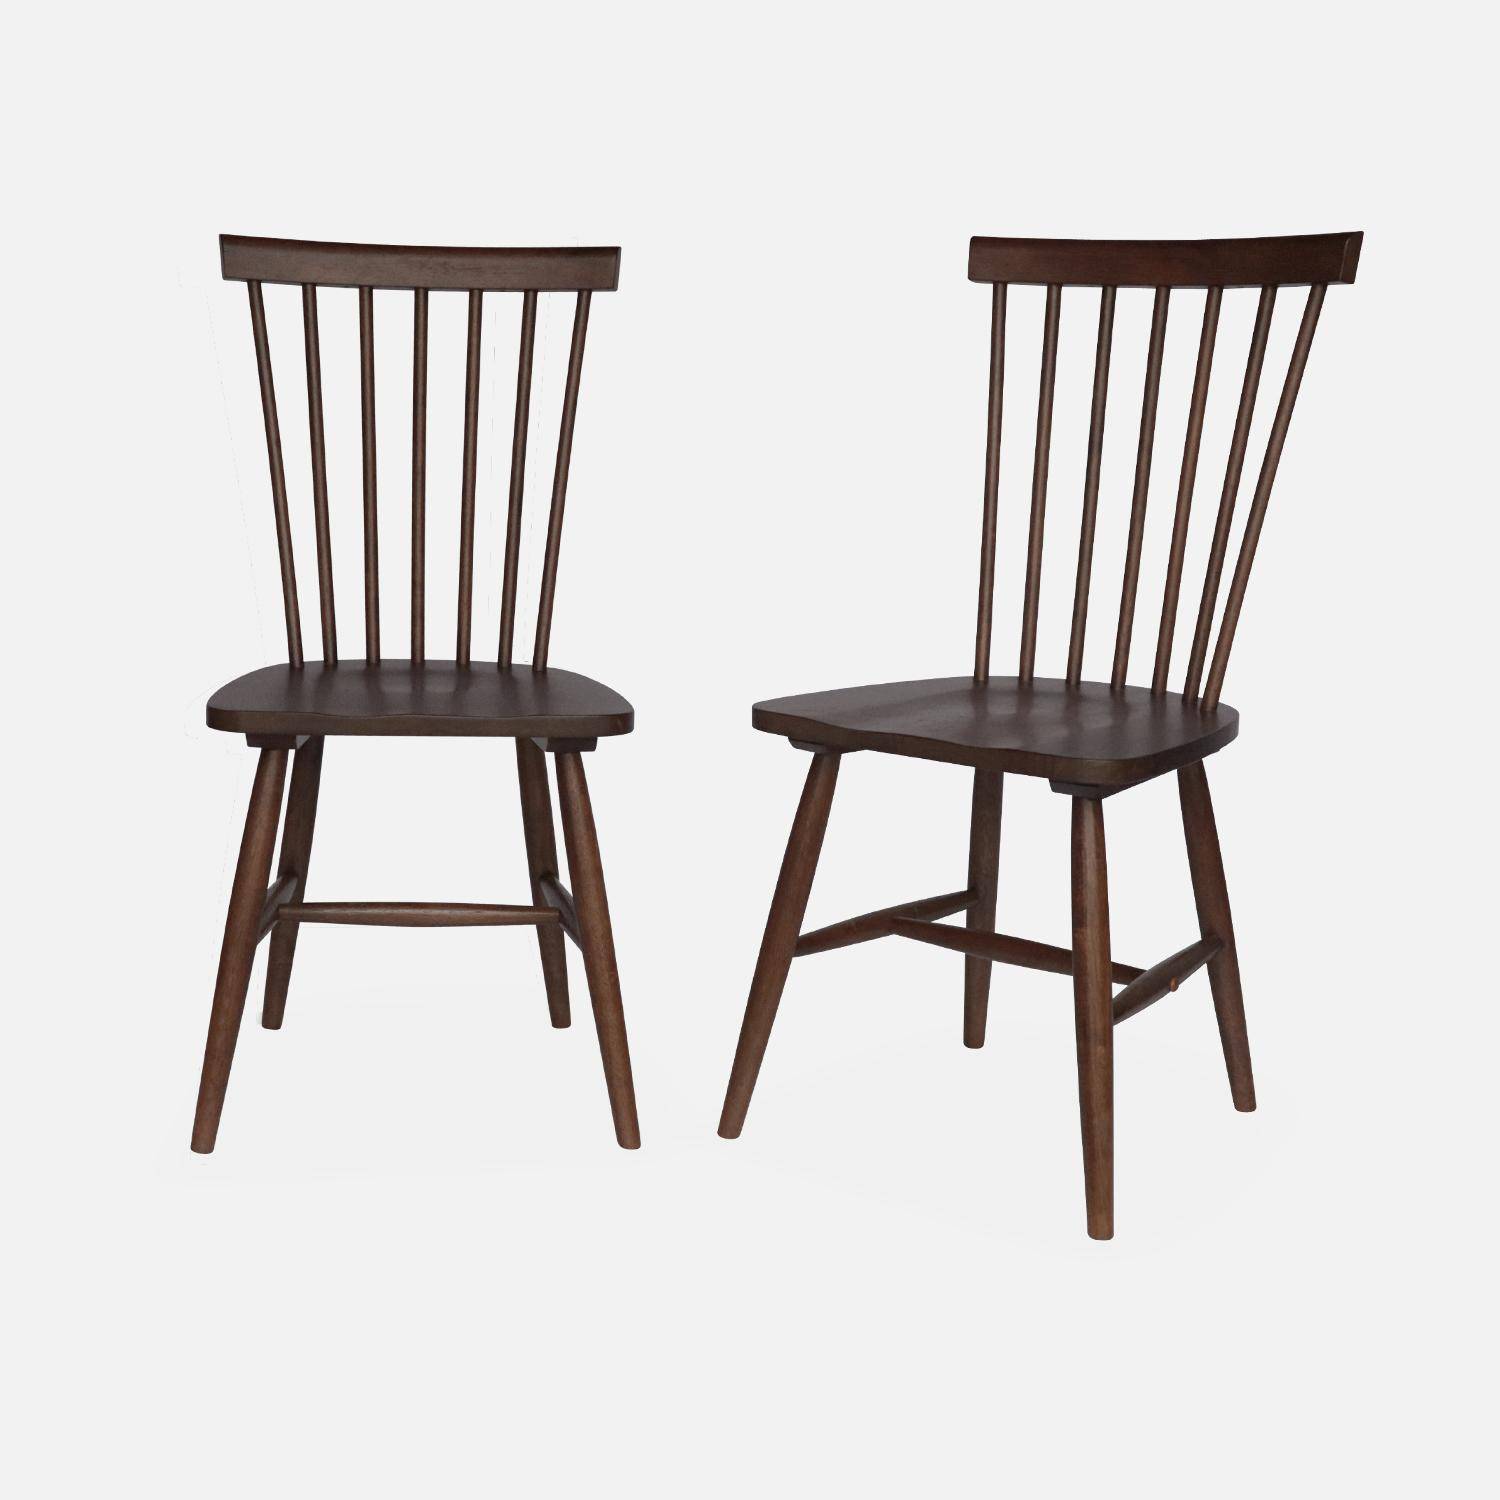 Juego de 2 sillas de nogal con listones de madera de caucho, ROMIE, ancho 50,8 x fondo 44,2 x alto 90cm. Photo4